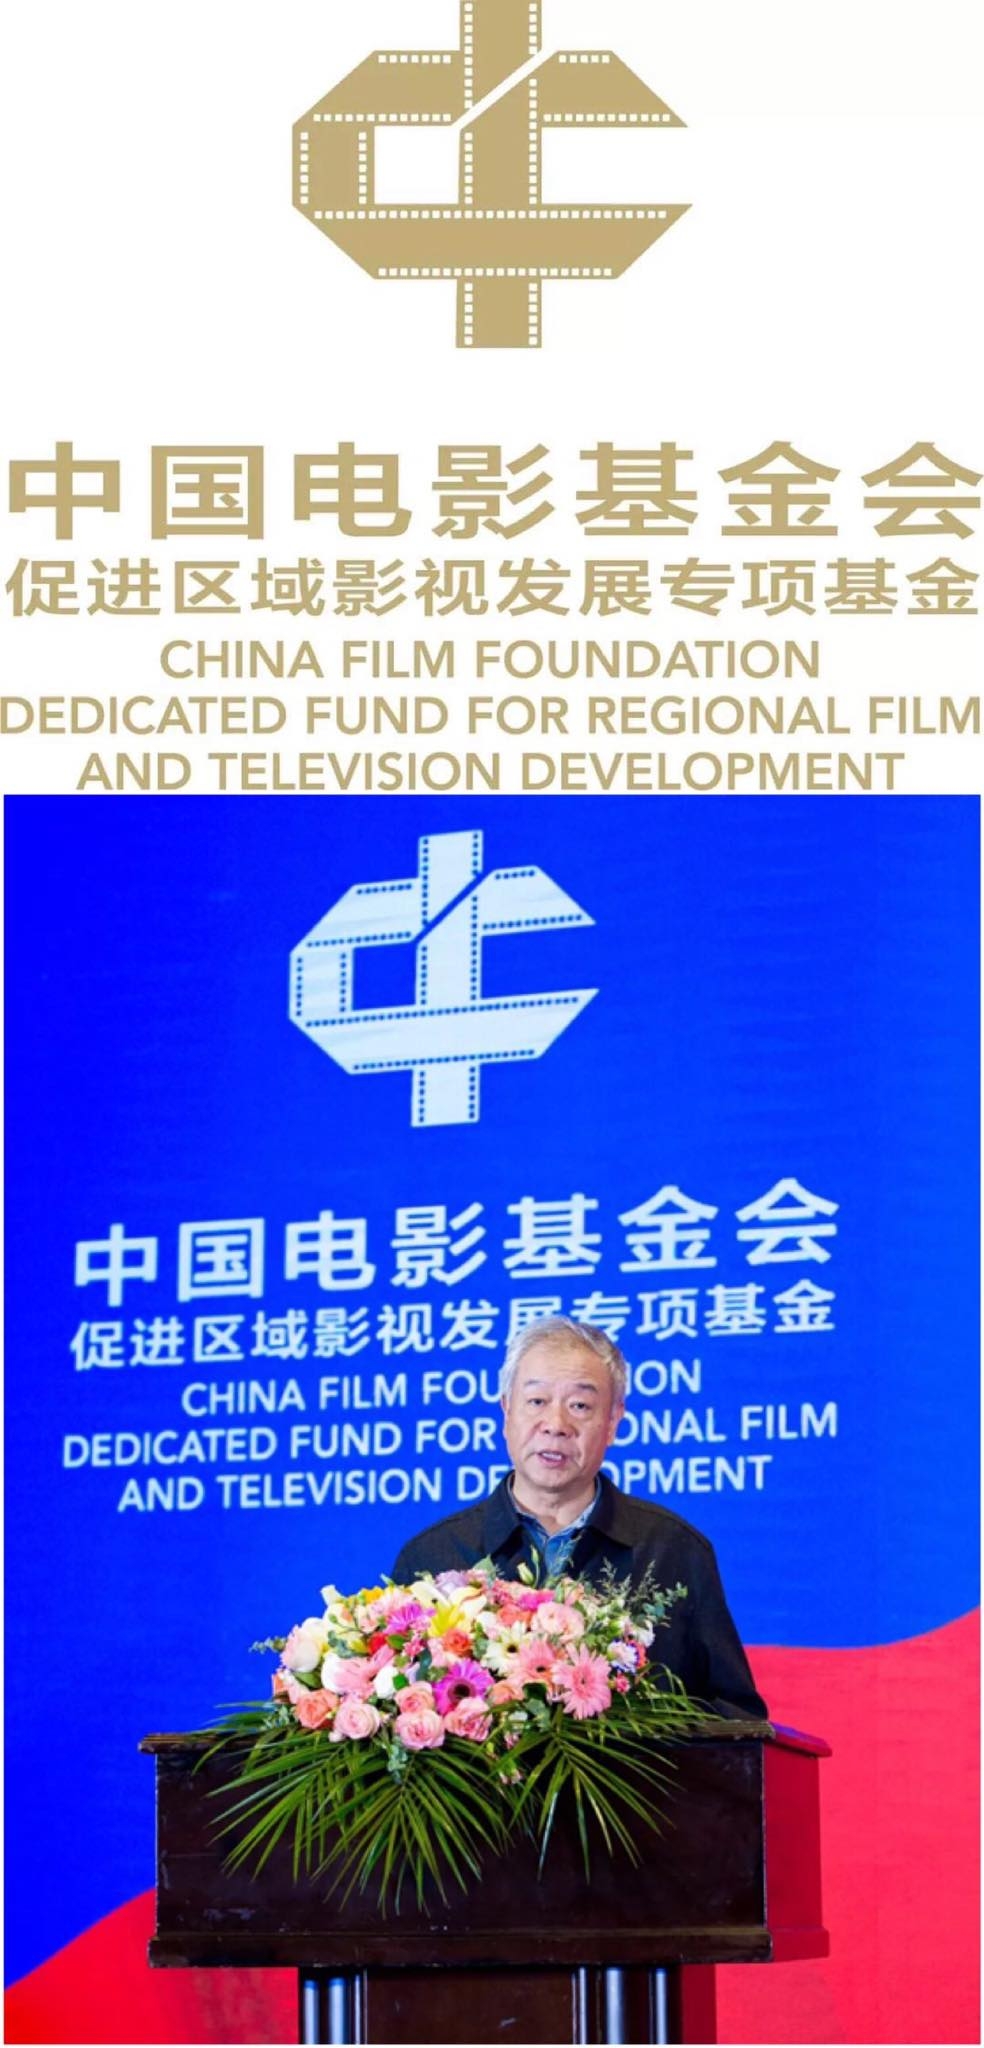 1. Quỹ điện ảnh Trung Quốc thành lập nhằm thúc đẩy sự phát triển của ngành công nghiệp điện ảnh cũng như tìm kiếm tài năng trẻ cho điện ảnh